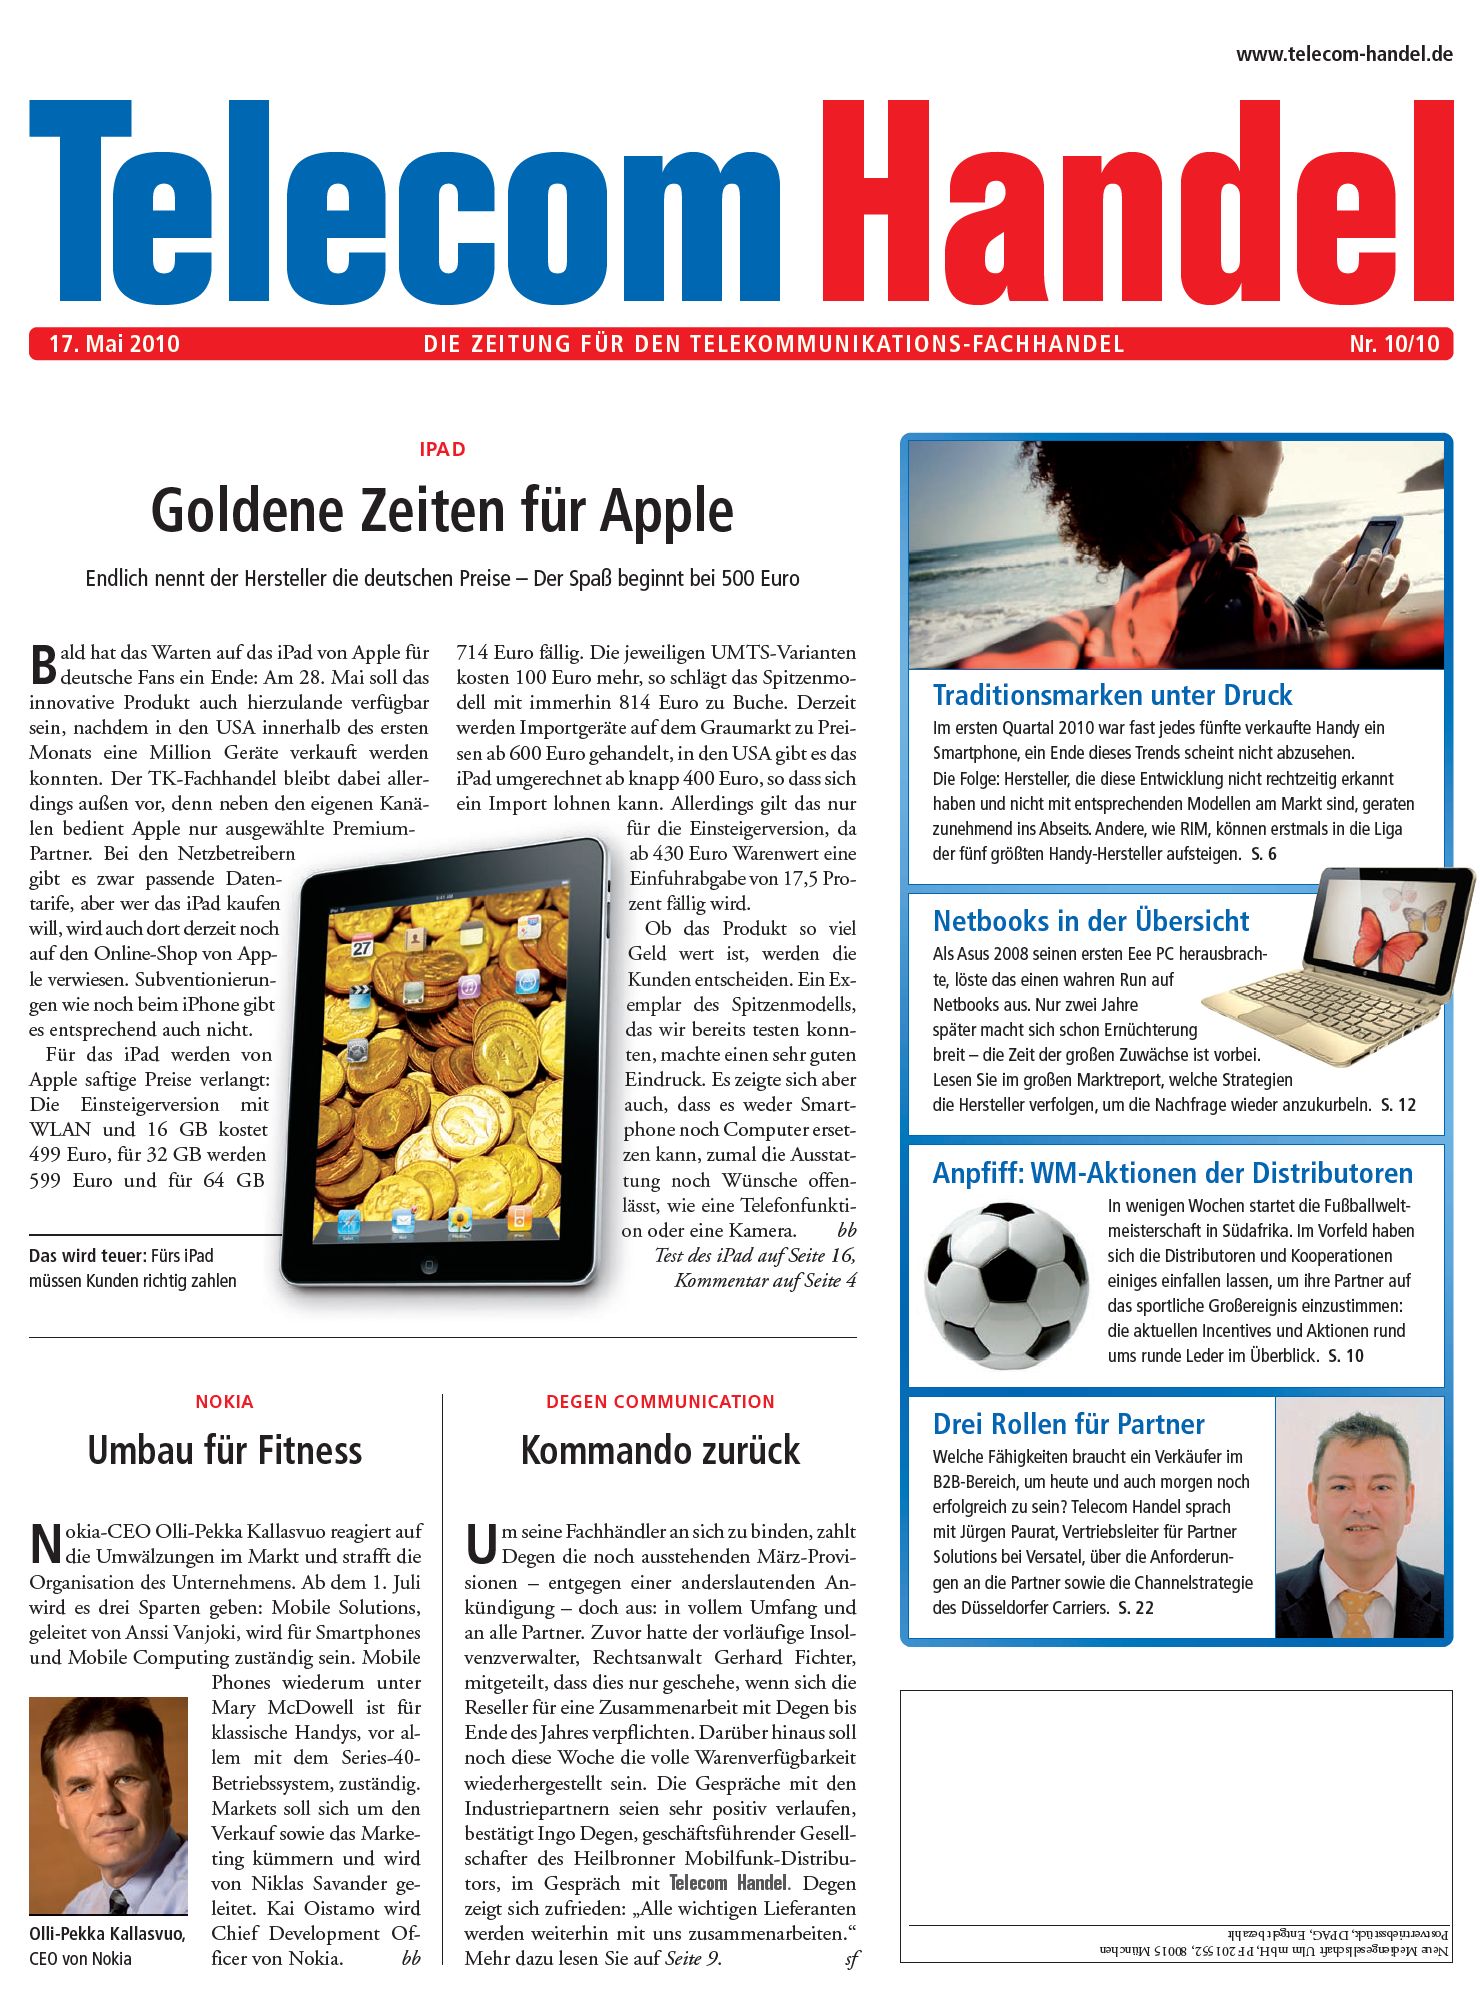 Telecom Handel Ausgabe 10/2010